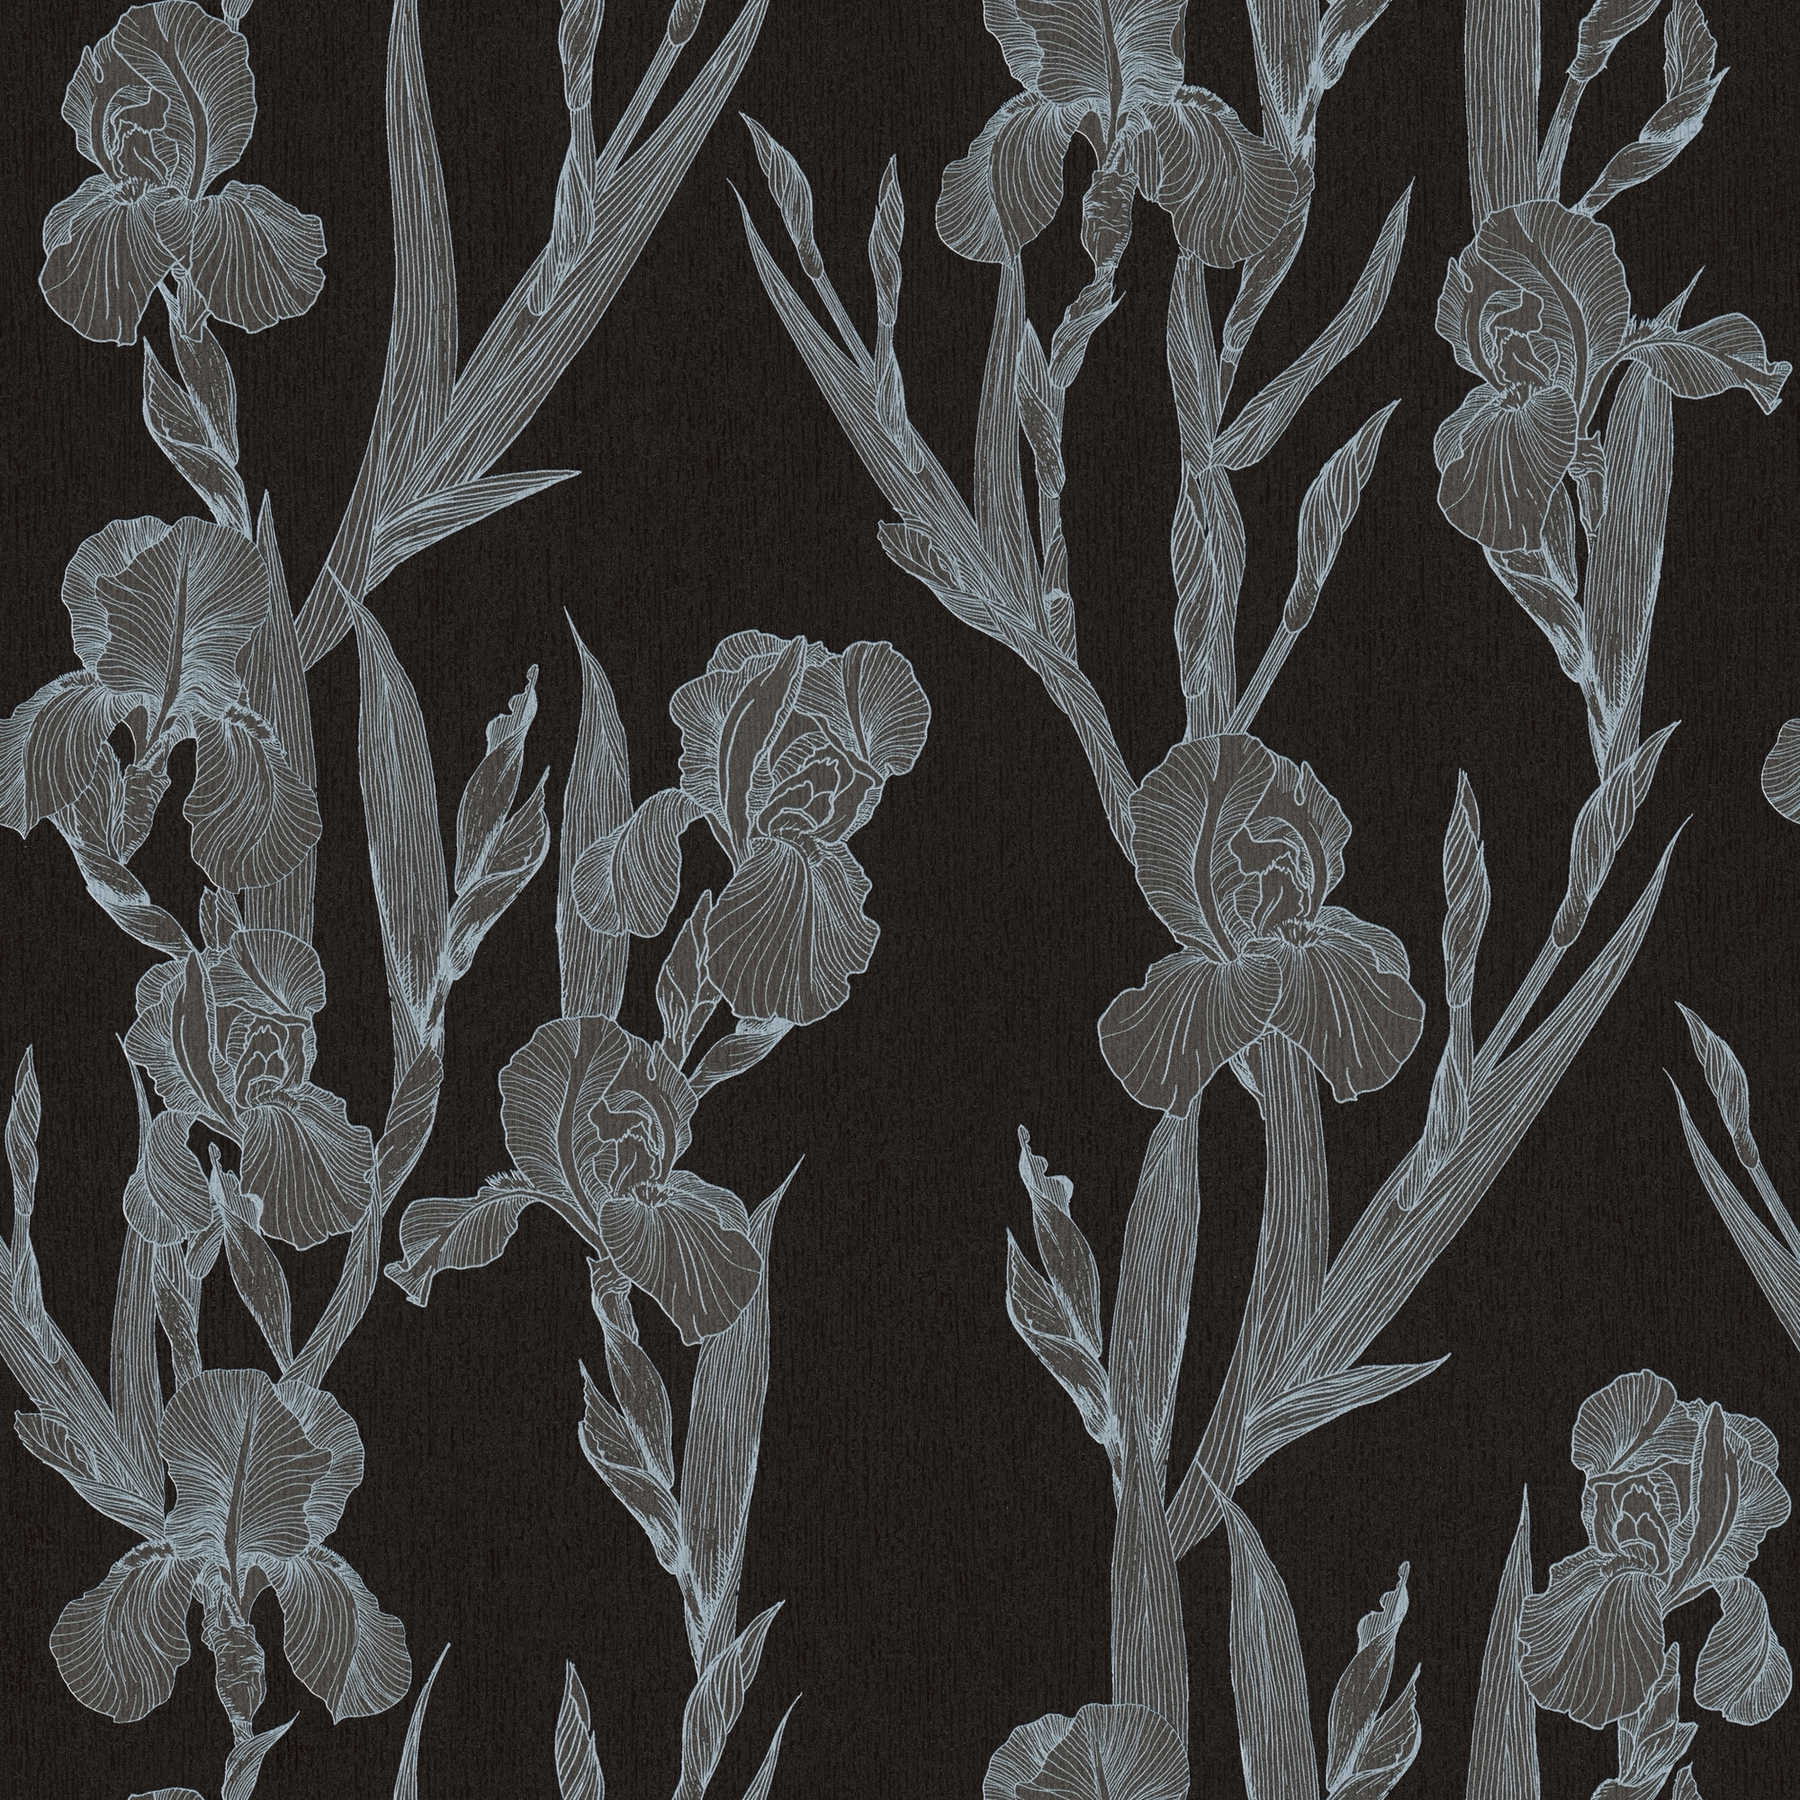         Moderne Blumentapete stilisiert, Blütenranken – Schwarz, Grau, Weiß
    